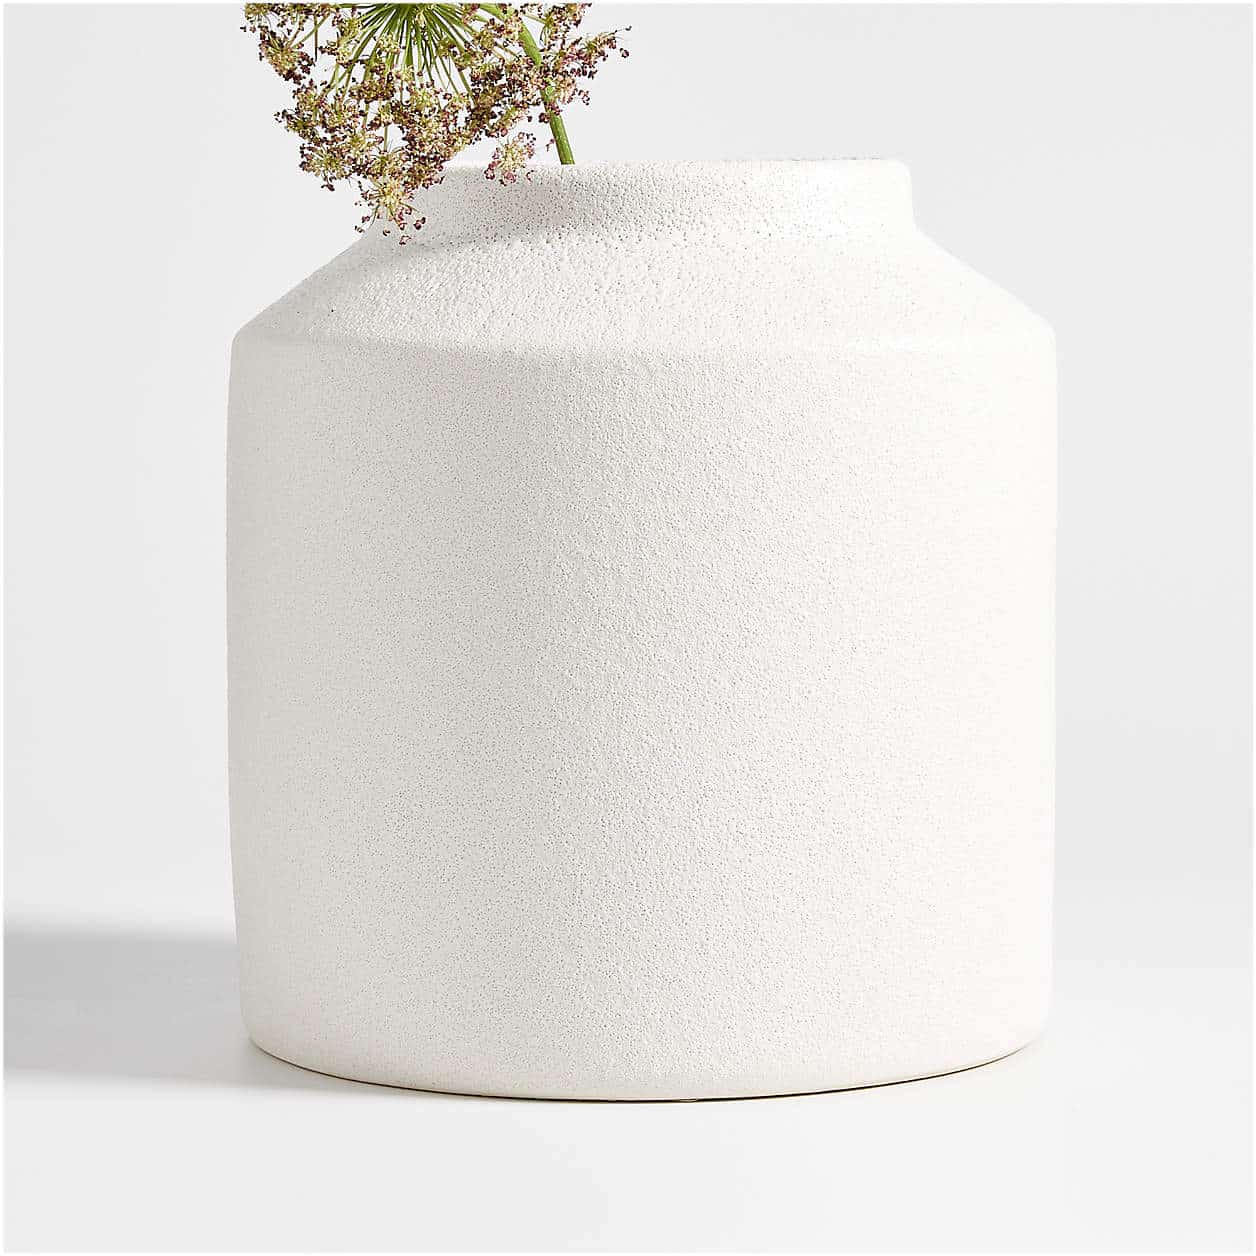 https://www.chrislovesjulia.com/wp-content/uploads/2022/11/manor-textured-white-vase-11.jpg